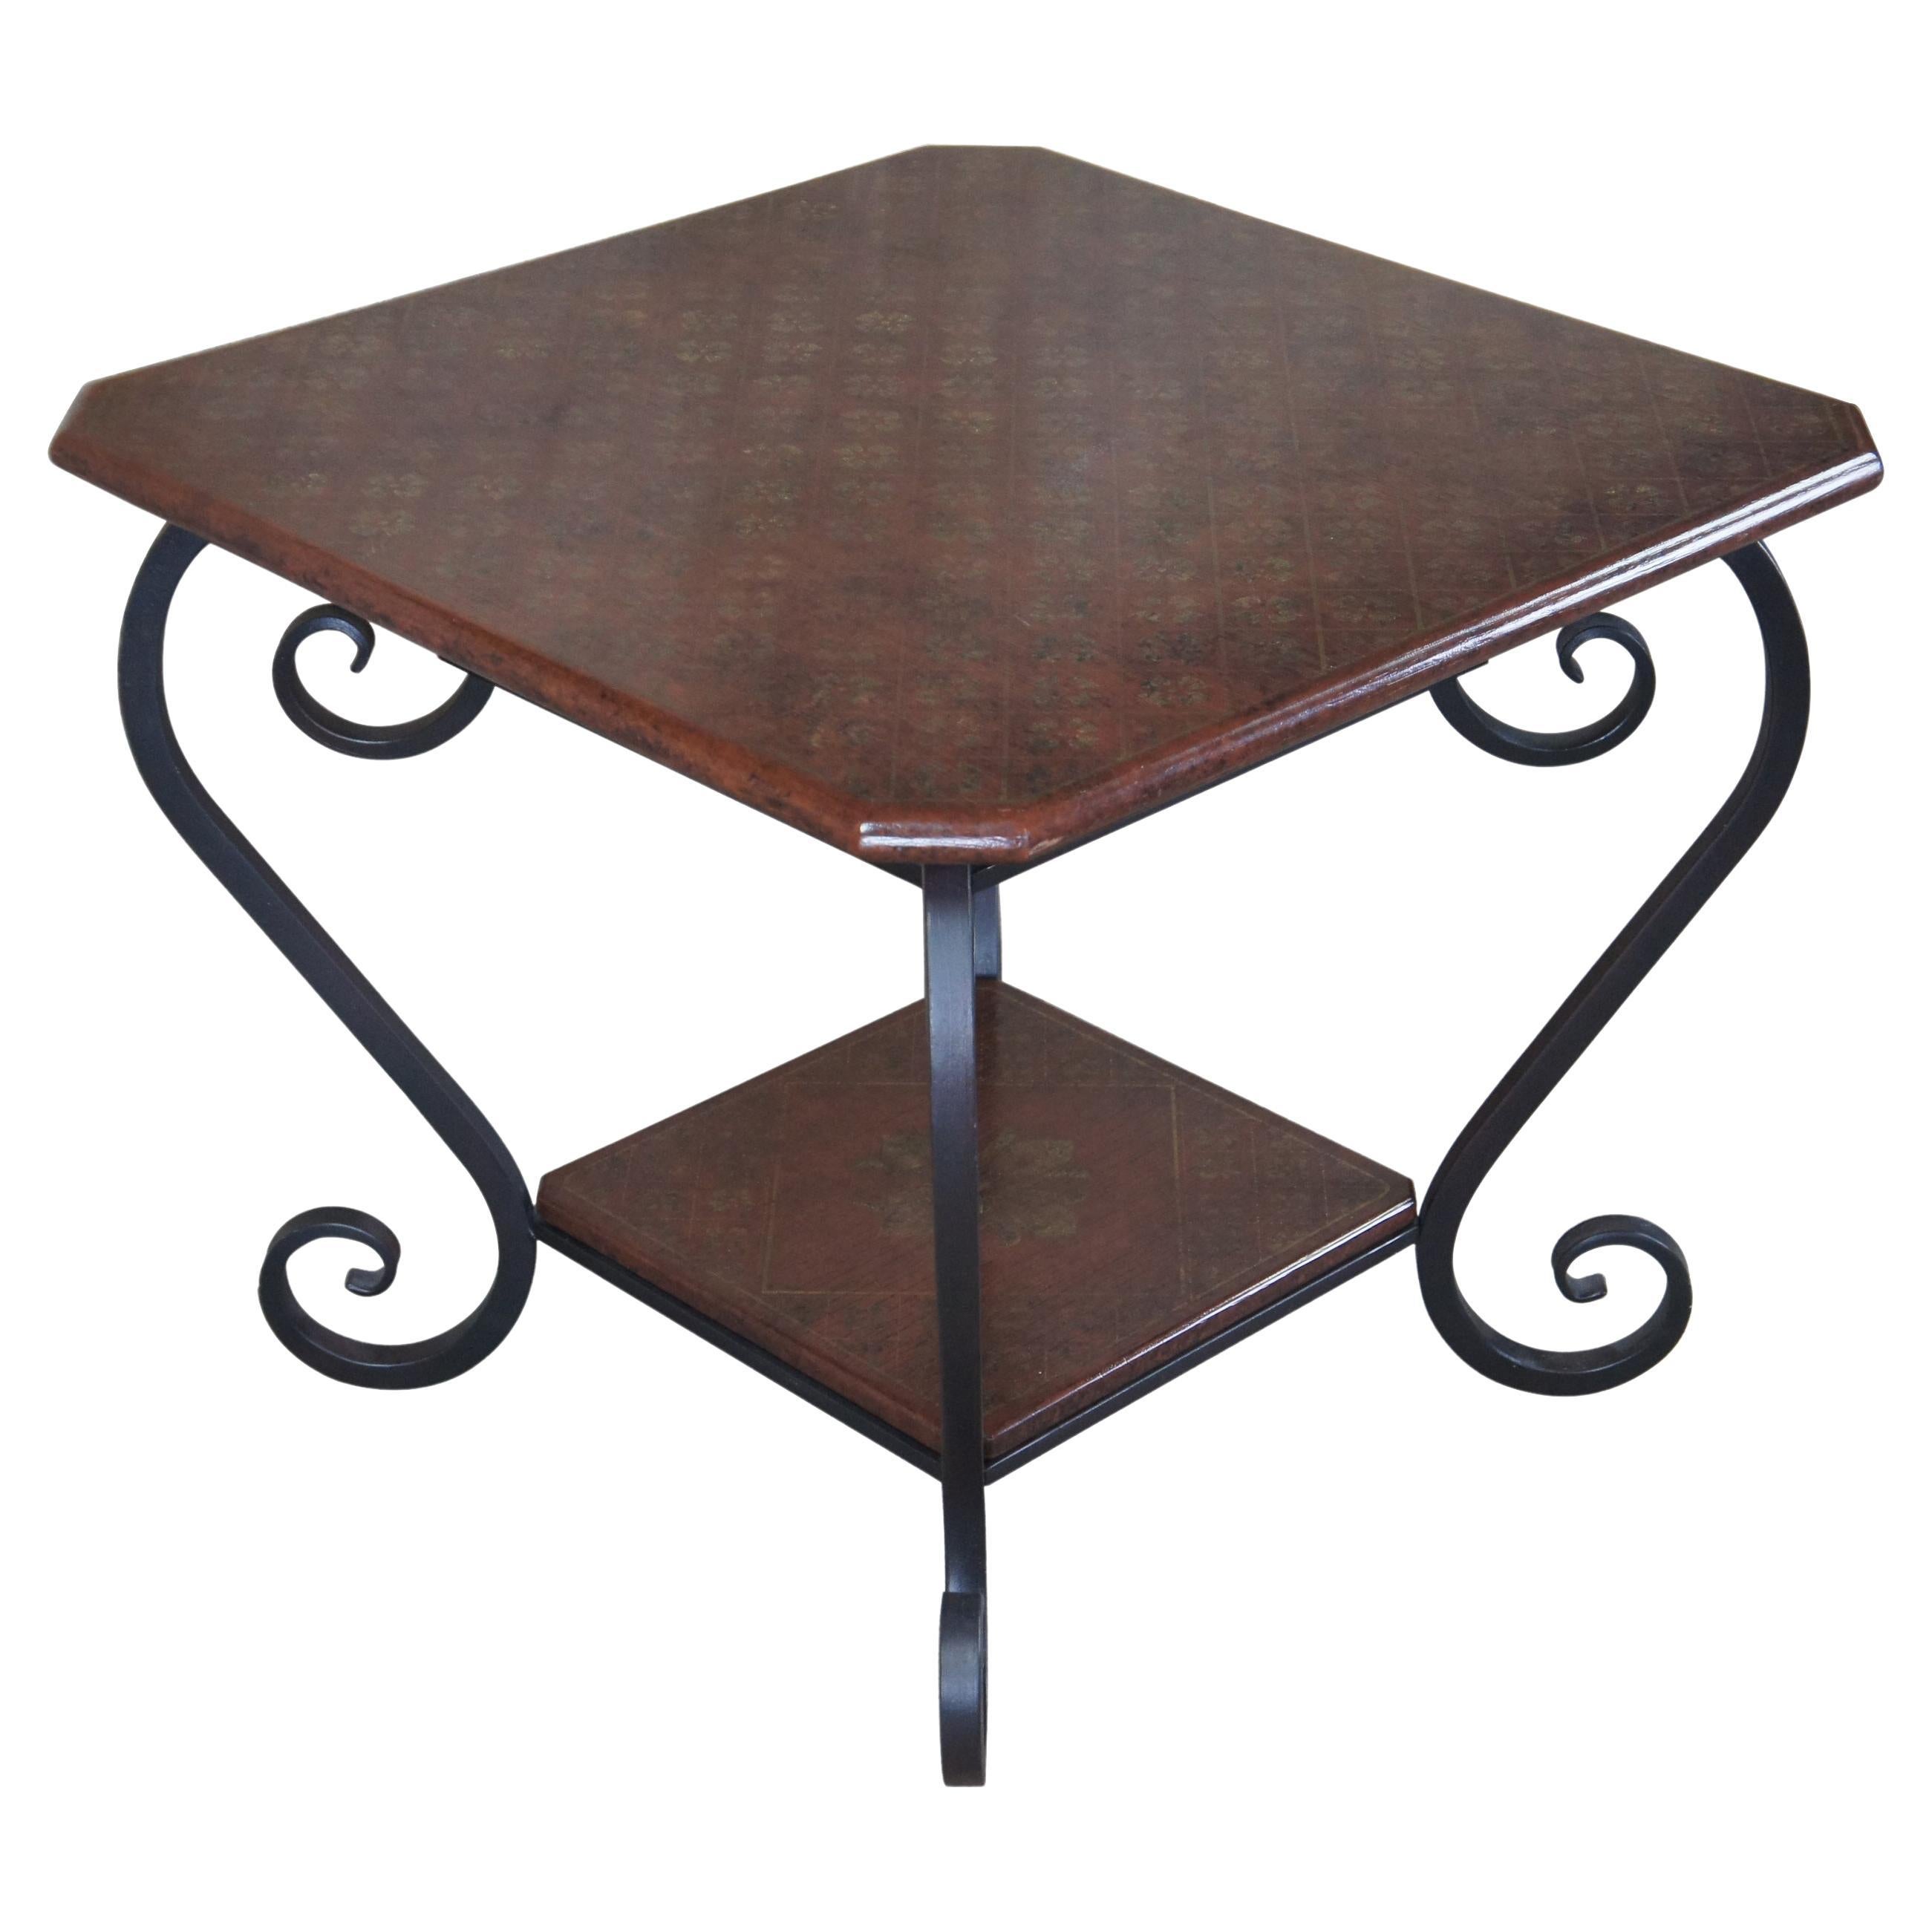 Brunschwig & Fils table d'appoint en bois et fer à volutes de style Régence française vintage